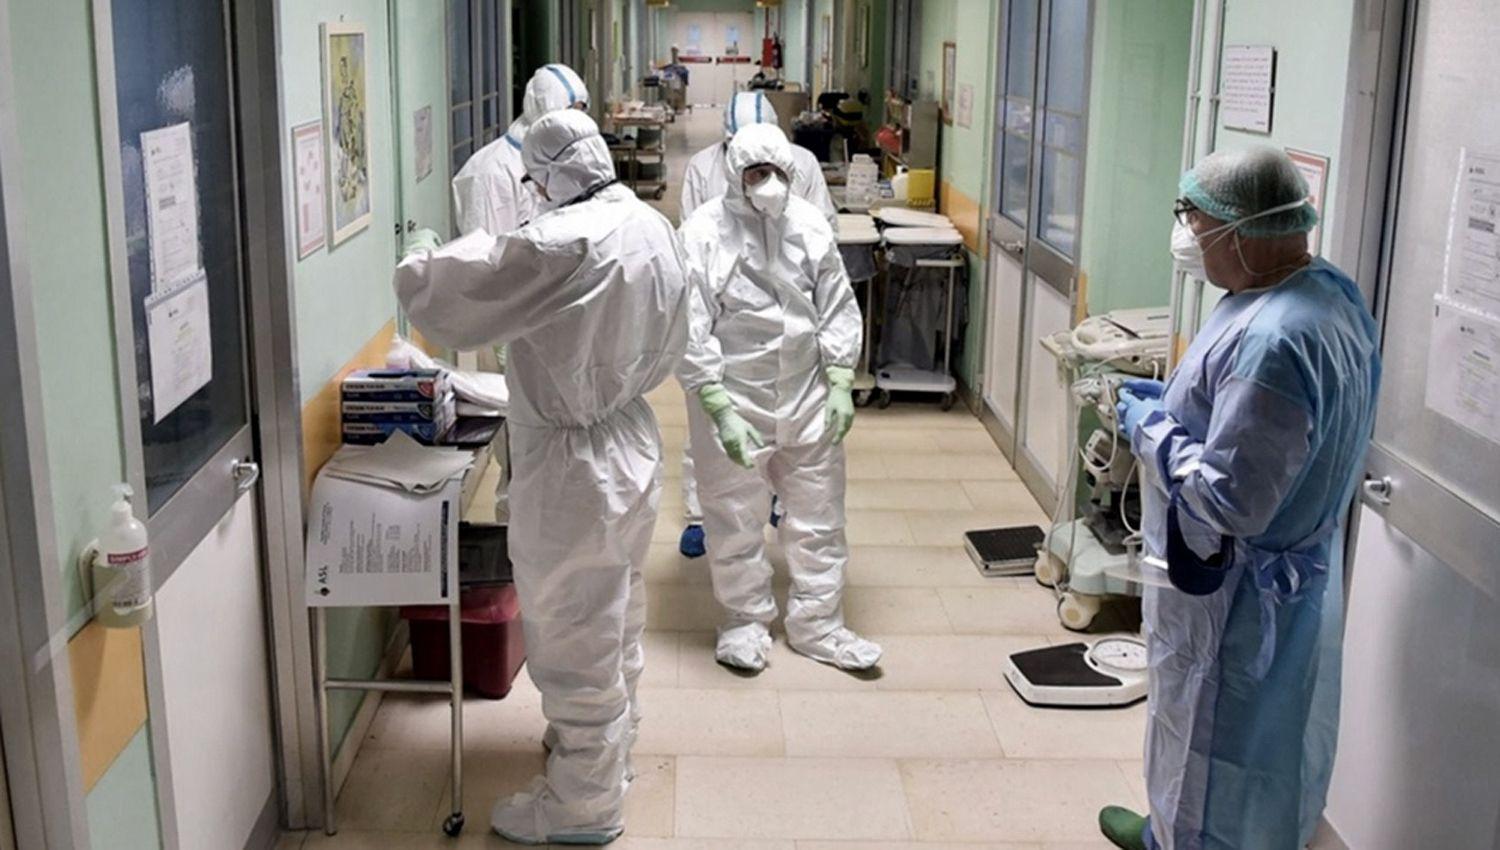 Argentina registra reacutecord de contagios en 24 horas- 11717 nuevos casos